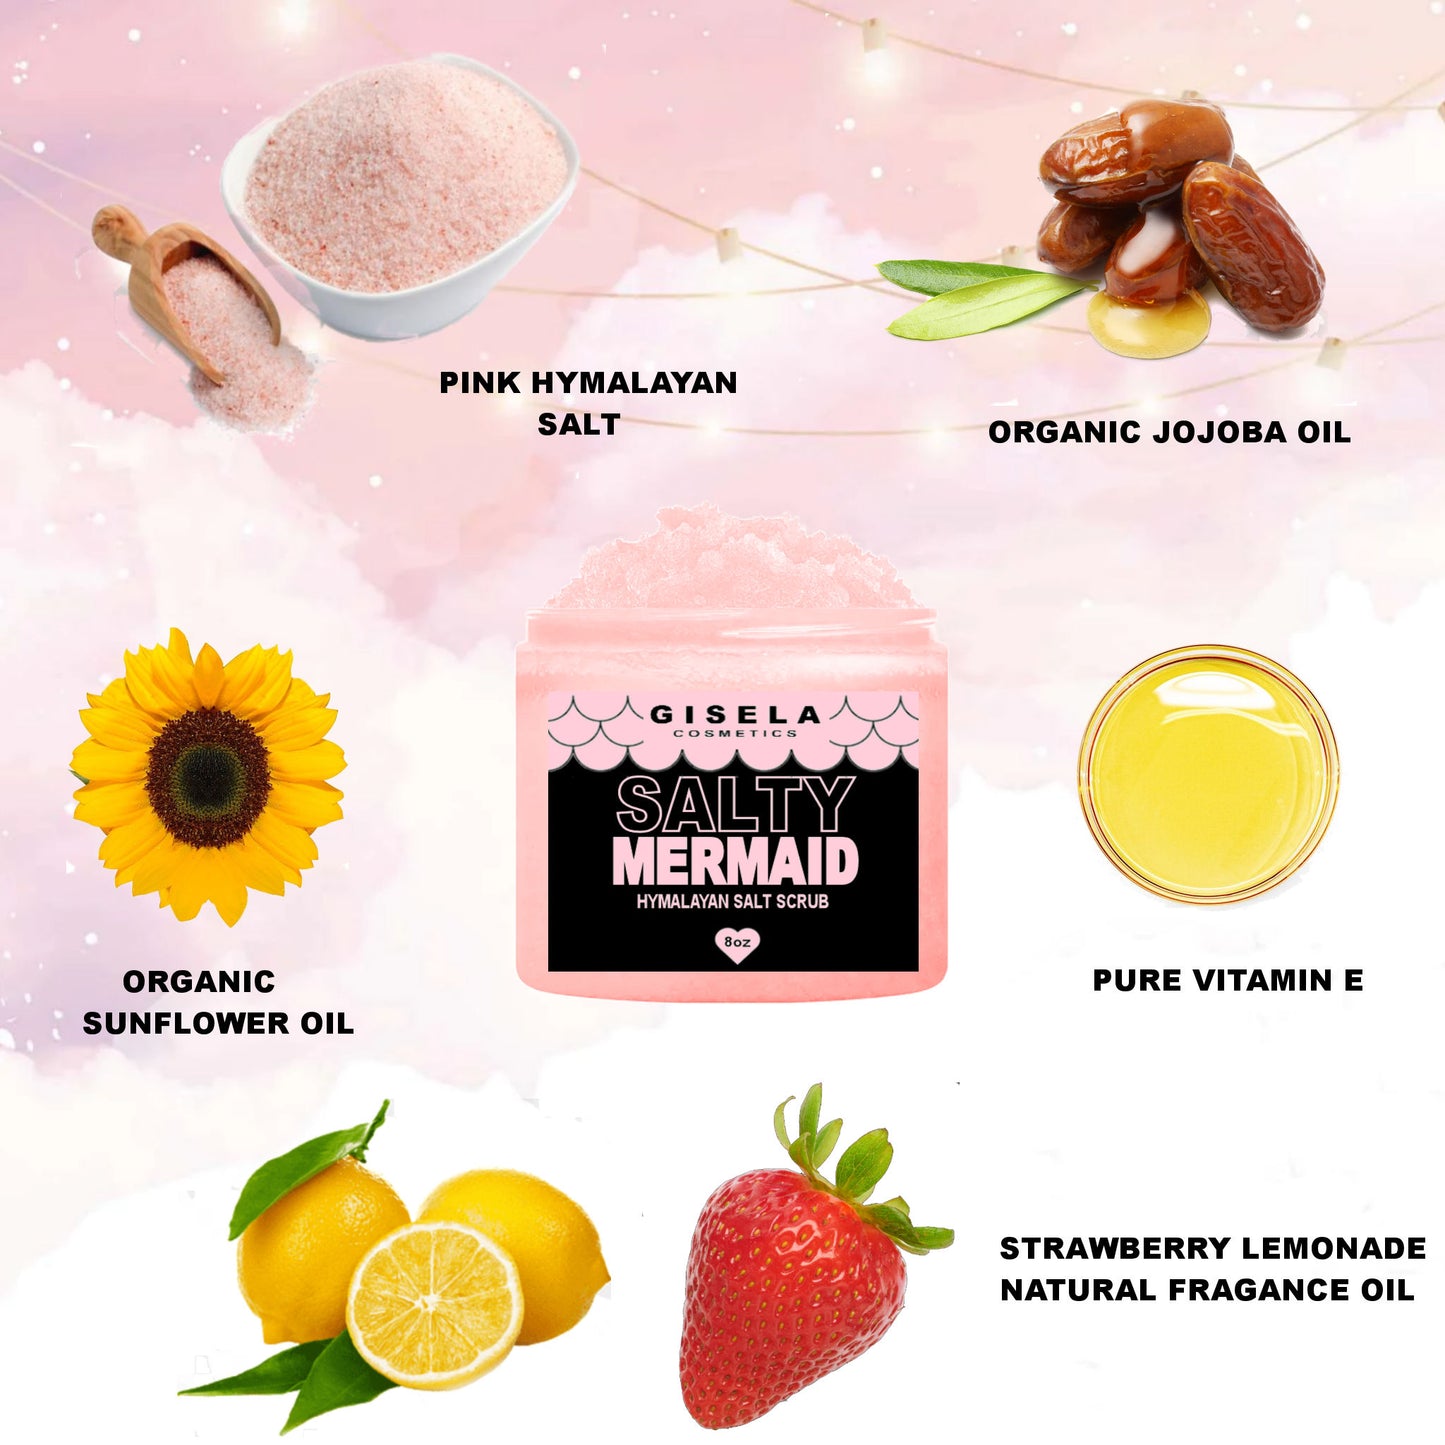 Pink Hymalayan Salt Scrub┃Exfoliate For Soft, Healthy Skin ┃Salty Mermaid by Gisela Cosmetics